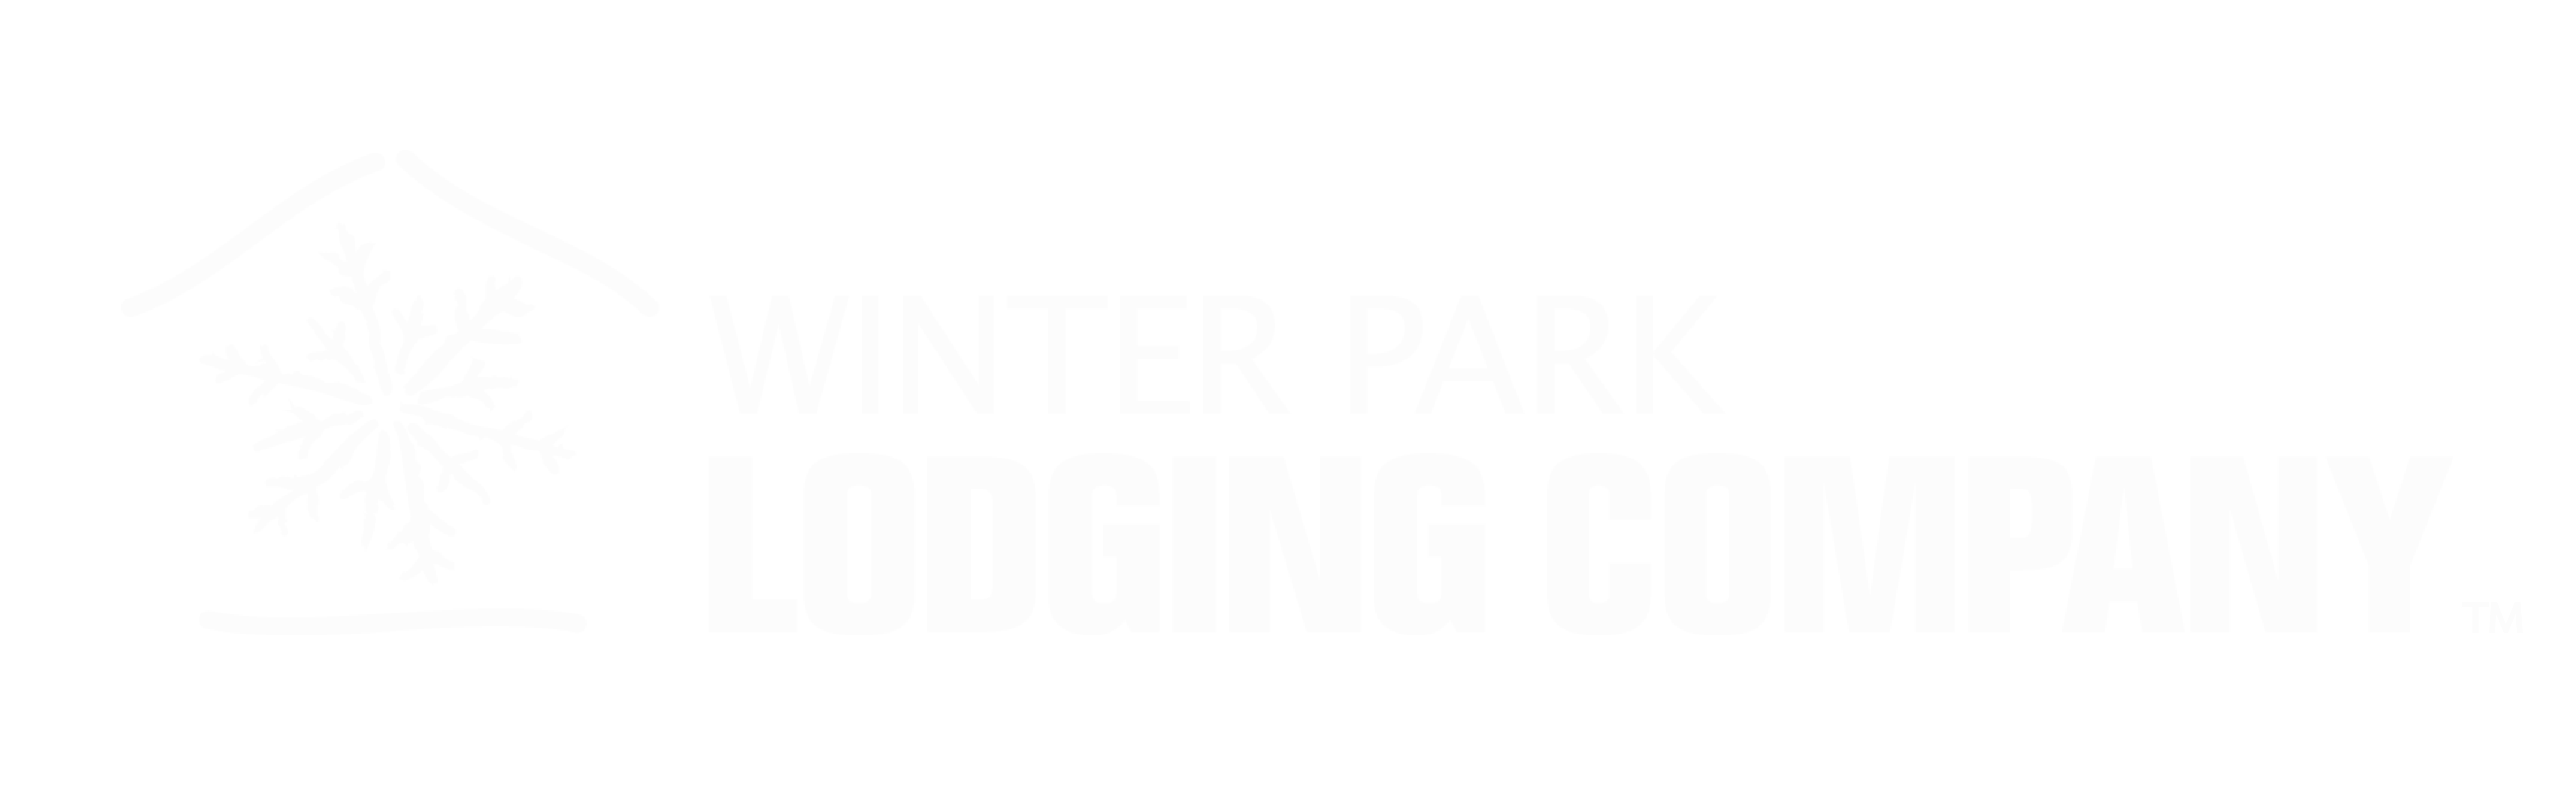 Winter Park Lodging Company in Winter Park Colorado